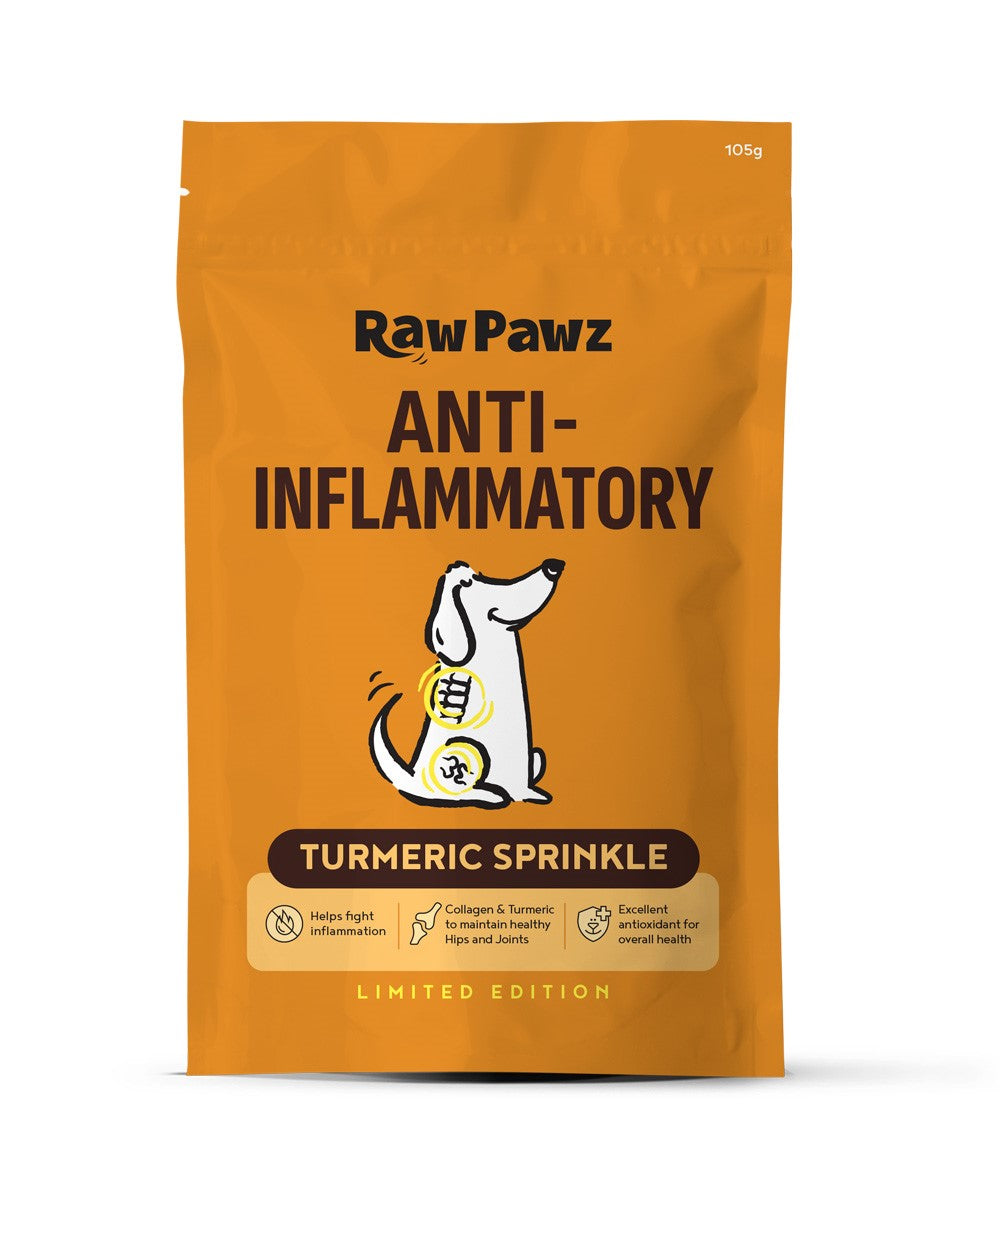 RawPawz Golden turmeric sprinkle